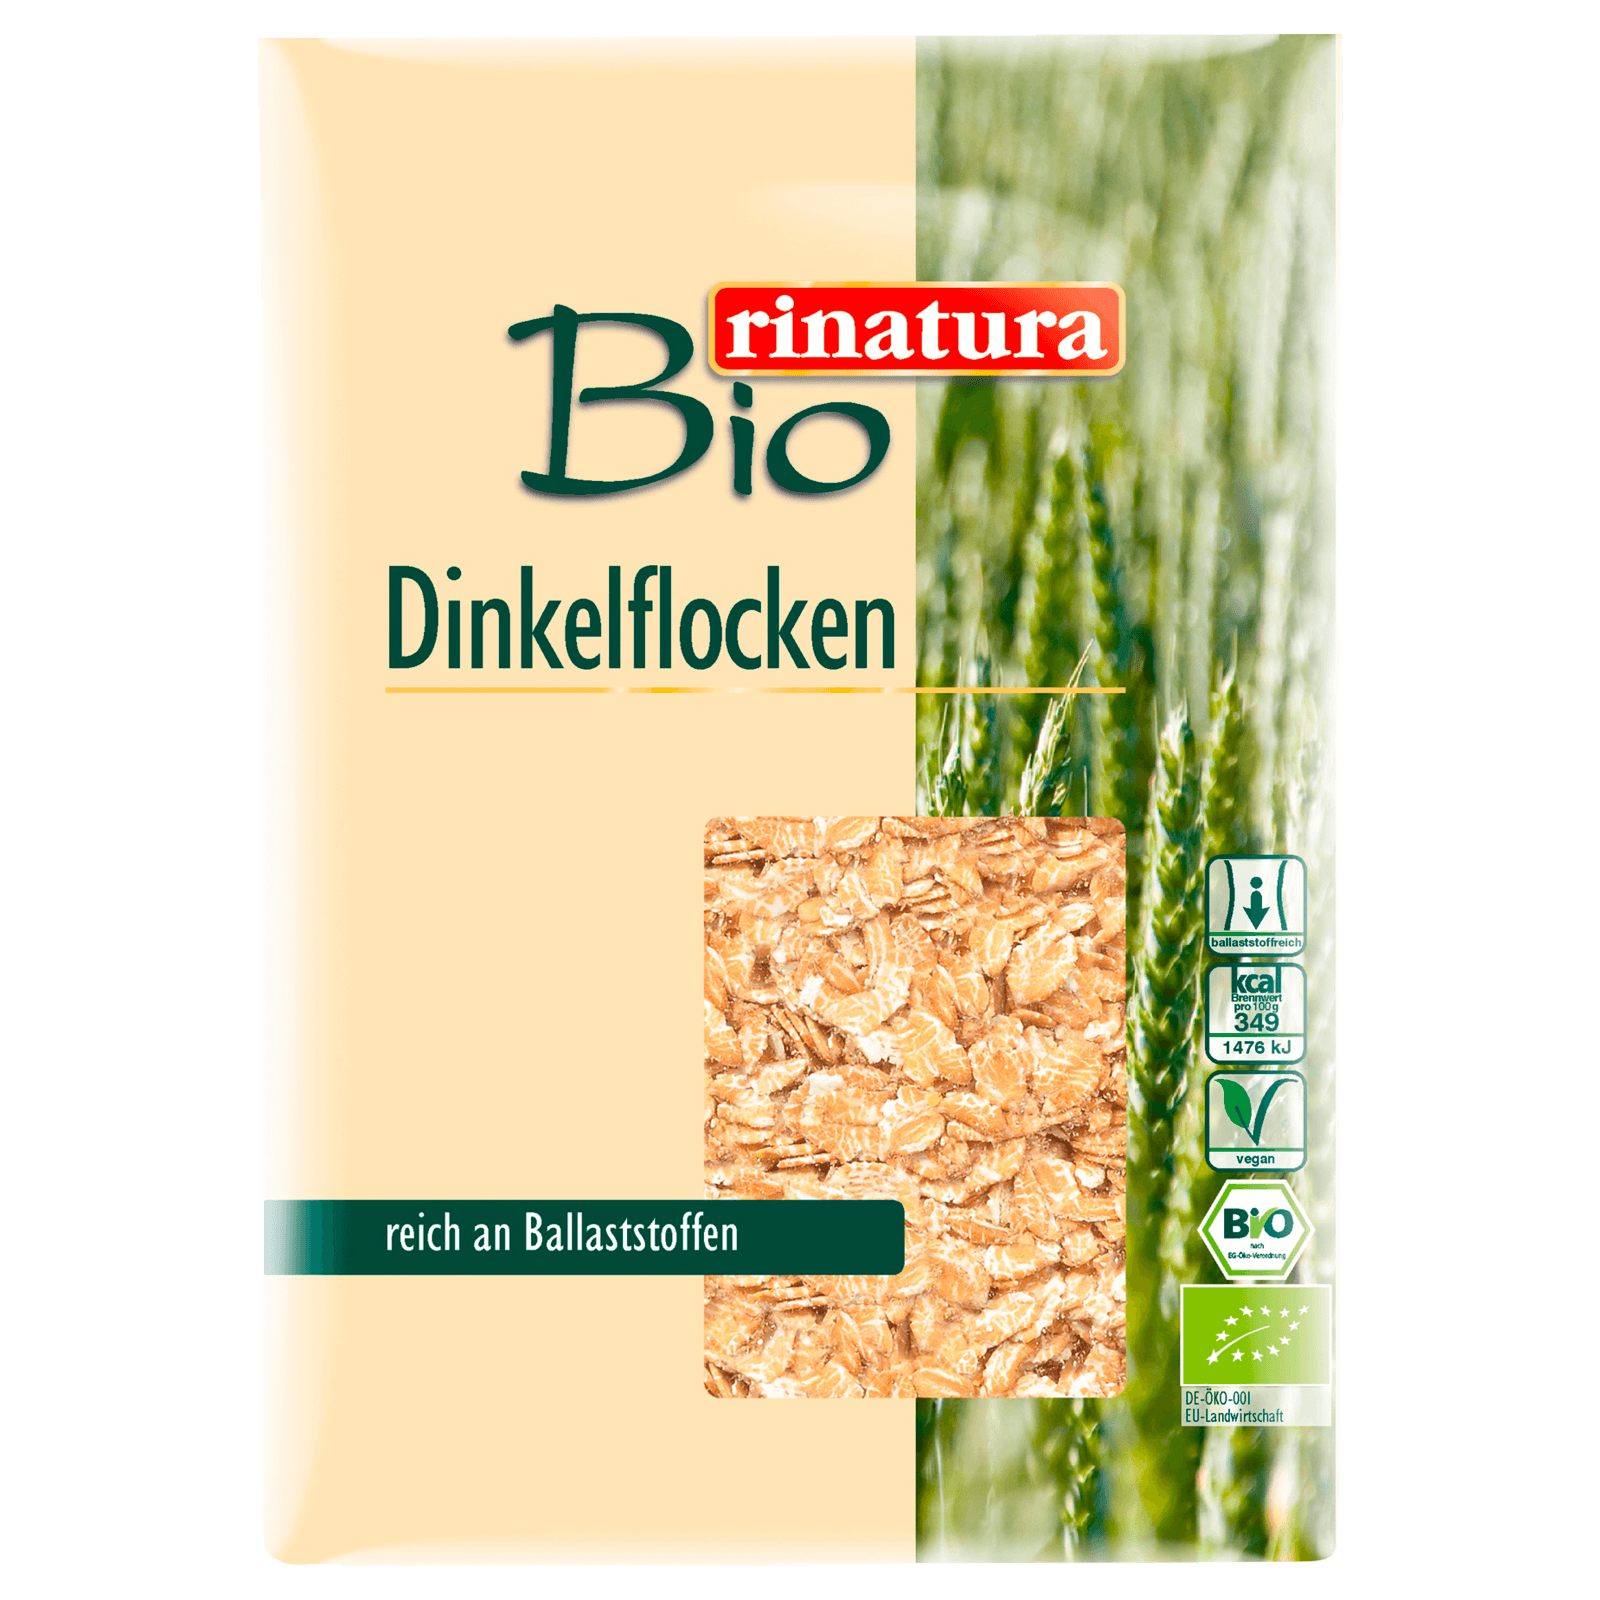 Rinatura Bio Vollkorn-Dinkelflocken 500g  für 3.29 EUR